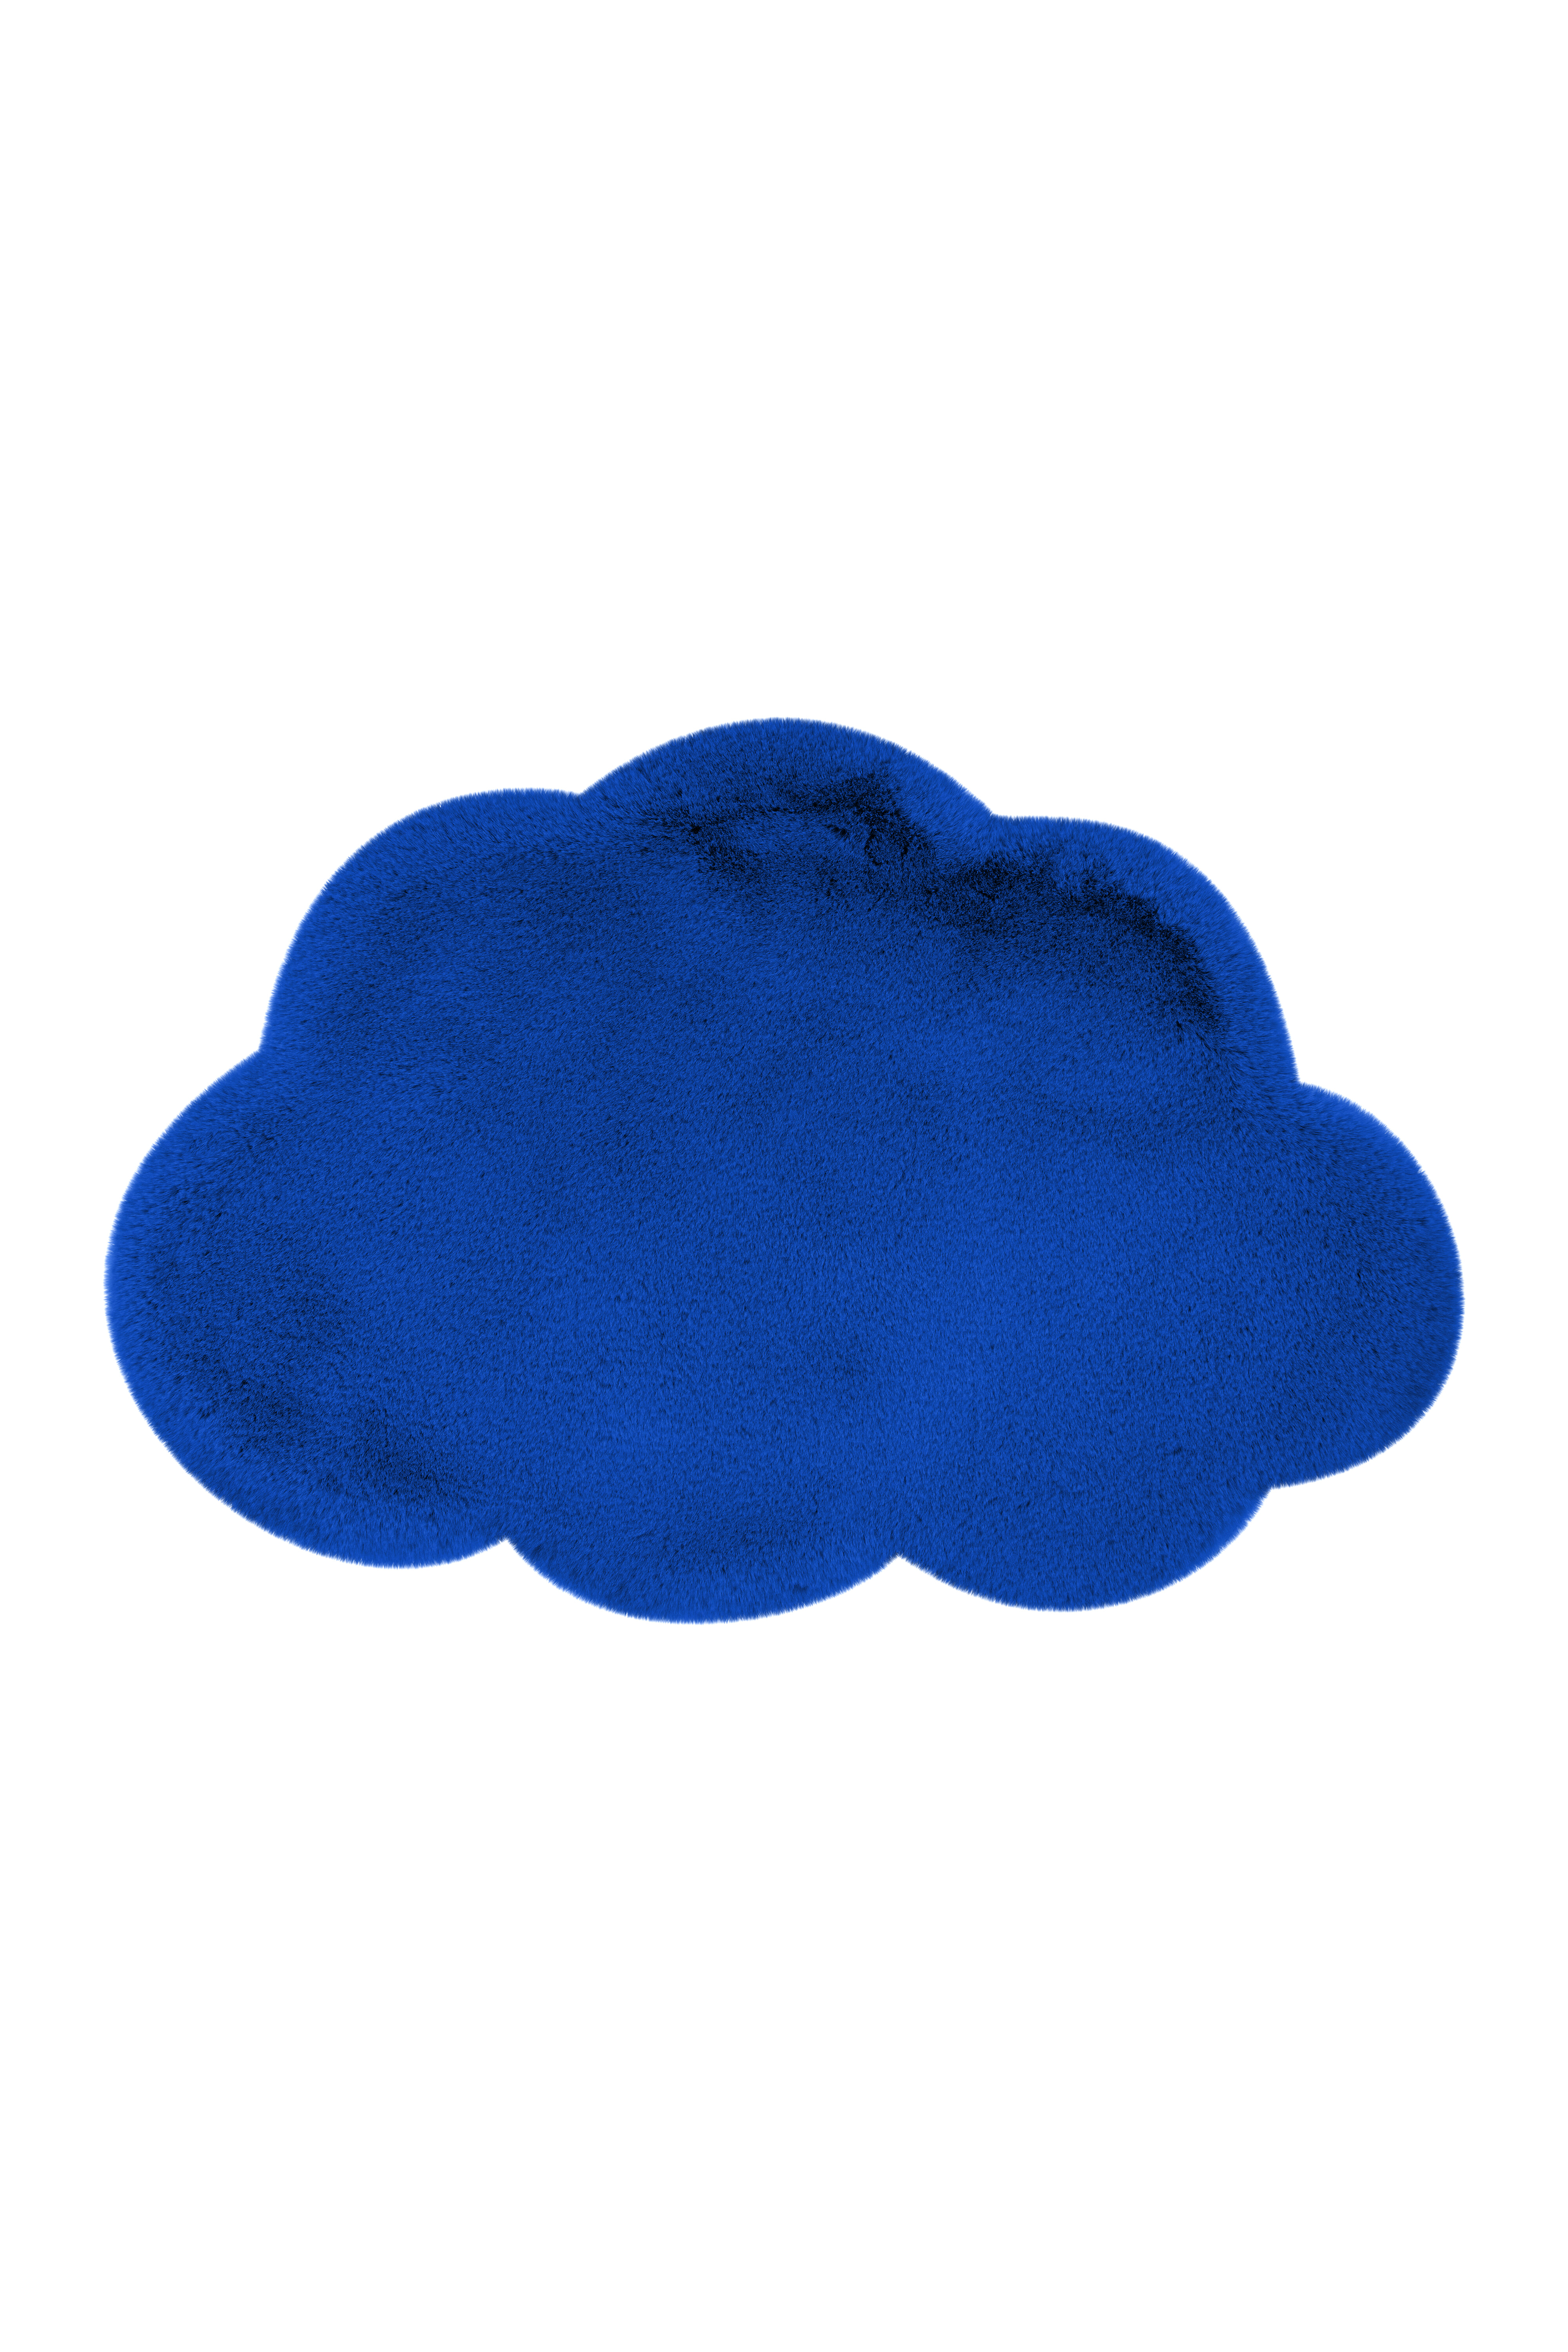 Kayoom Vloerkleed 'Wolkje' kleur Blauw, 60 x 90cm